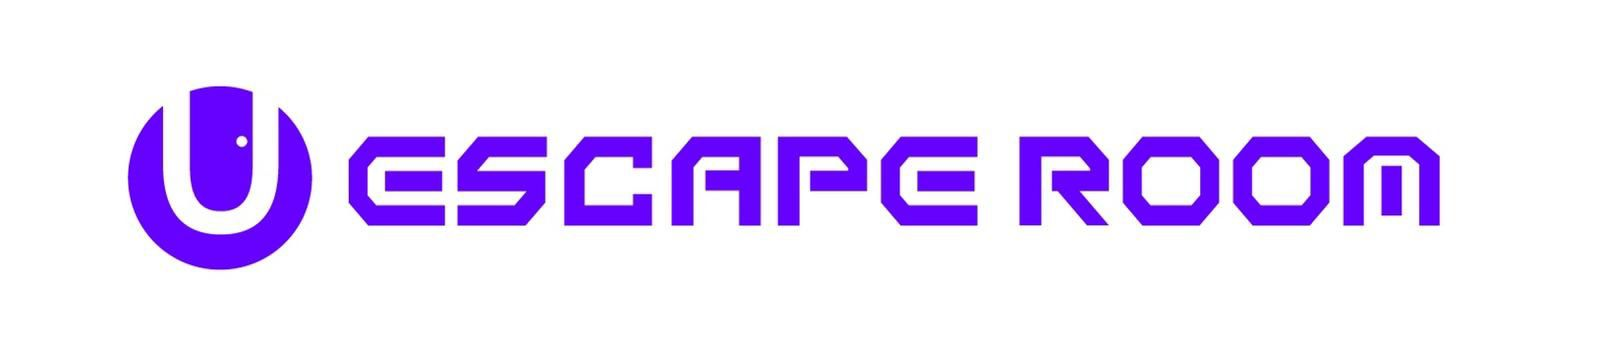 U Escape Room Logo